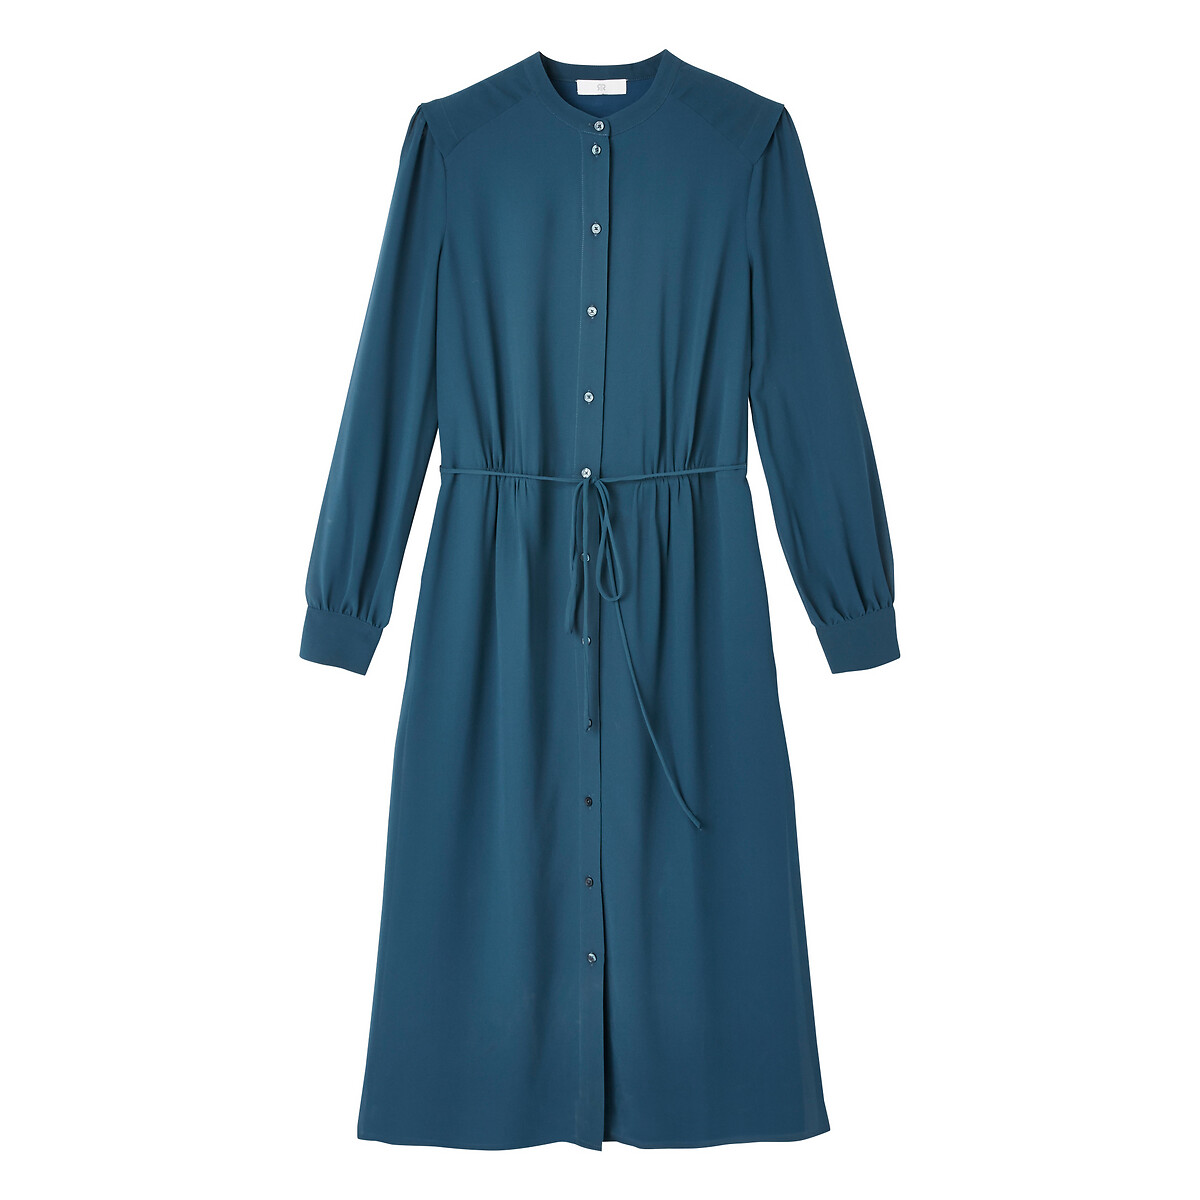 Платье-рубашка La Redoute С круглым вырезом длинные рукава 52 (FR) - 58 (RUS) синий, размер 52 (FR) - 58 (RUS) С круглым вырезом длинные рукава 52 (FR) - 58 (RUS) синий - фото 5